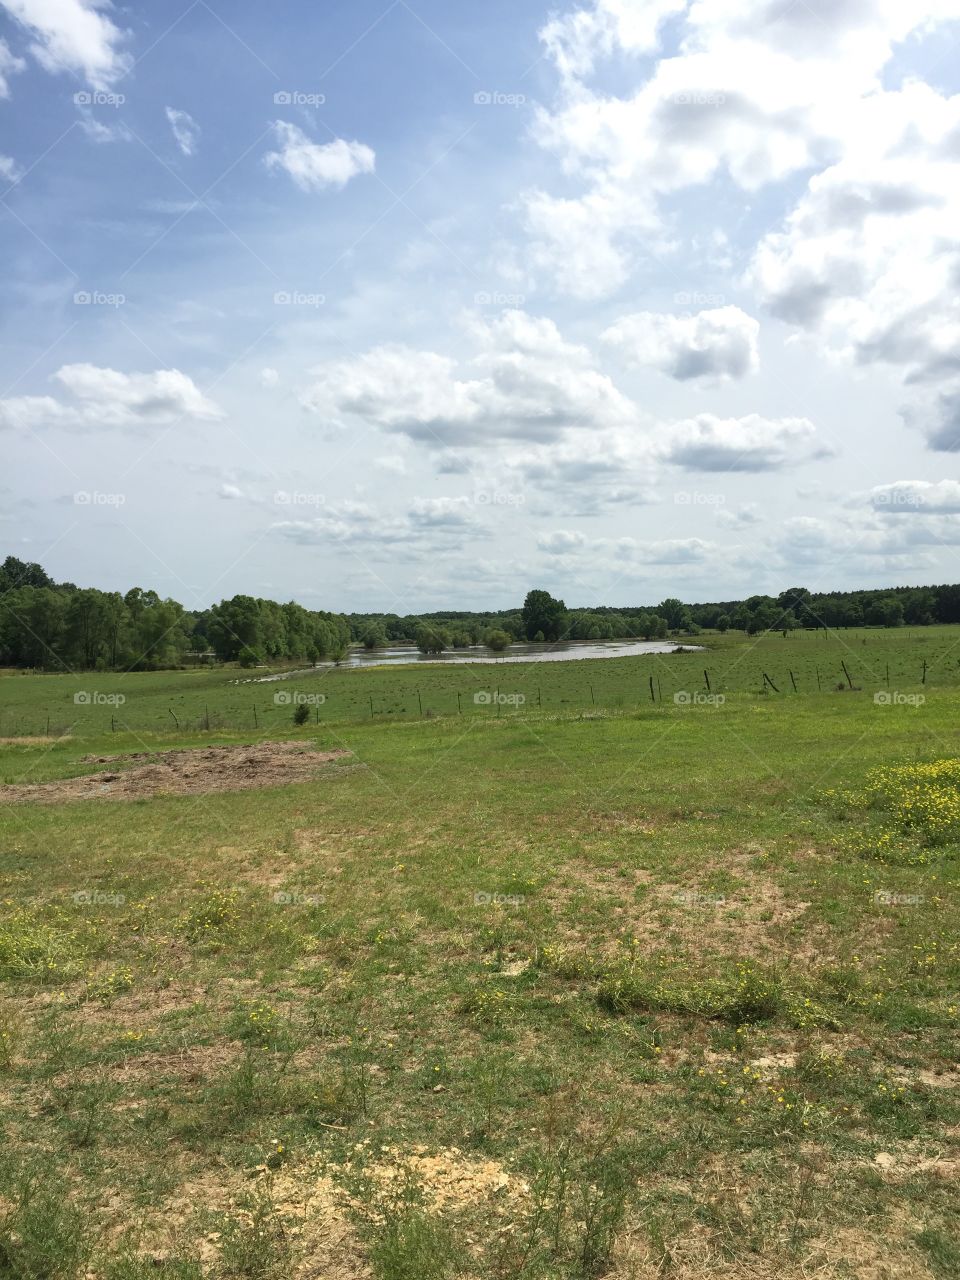 Landscape looking over crawfish ponds in Mississippi 